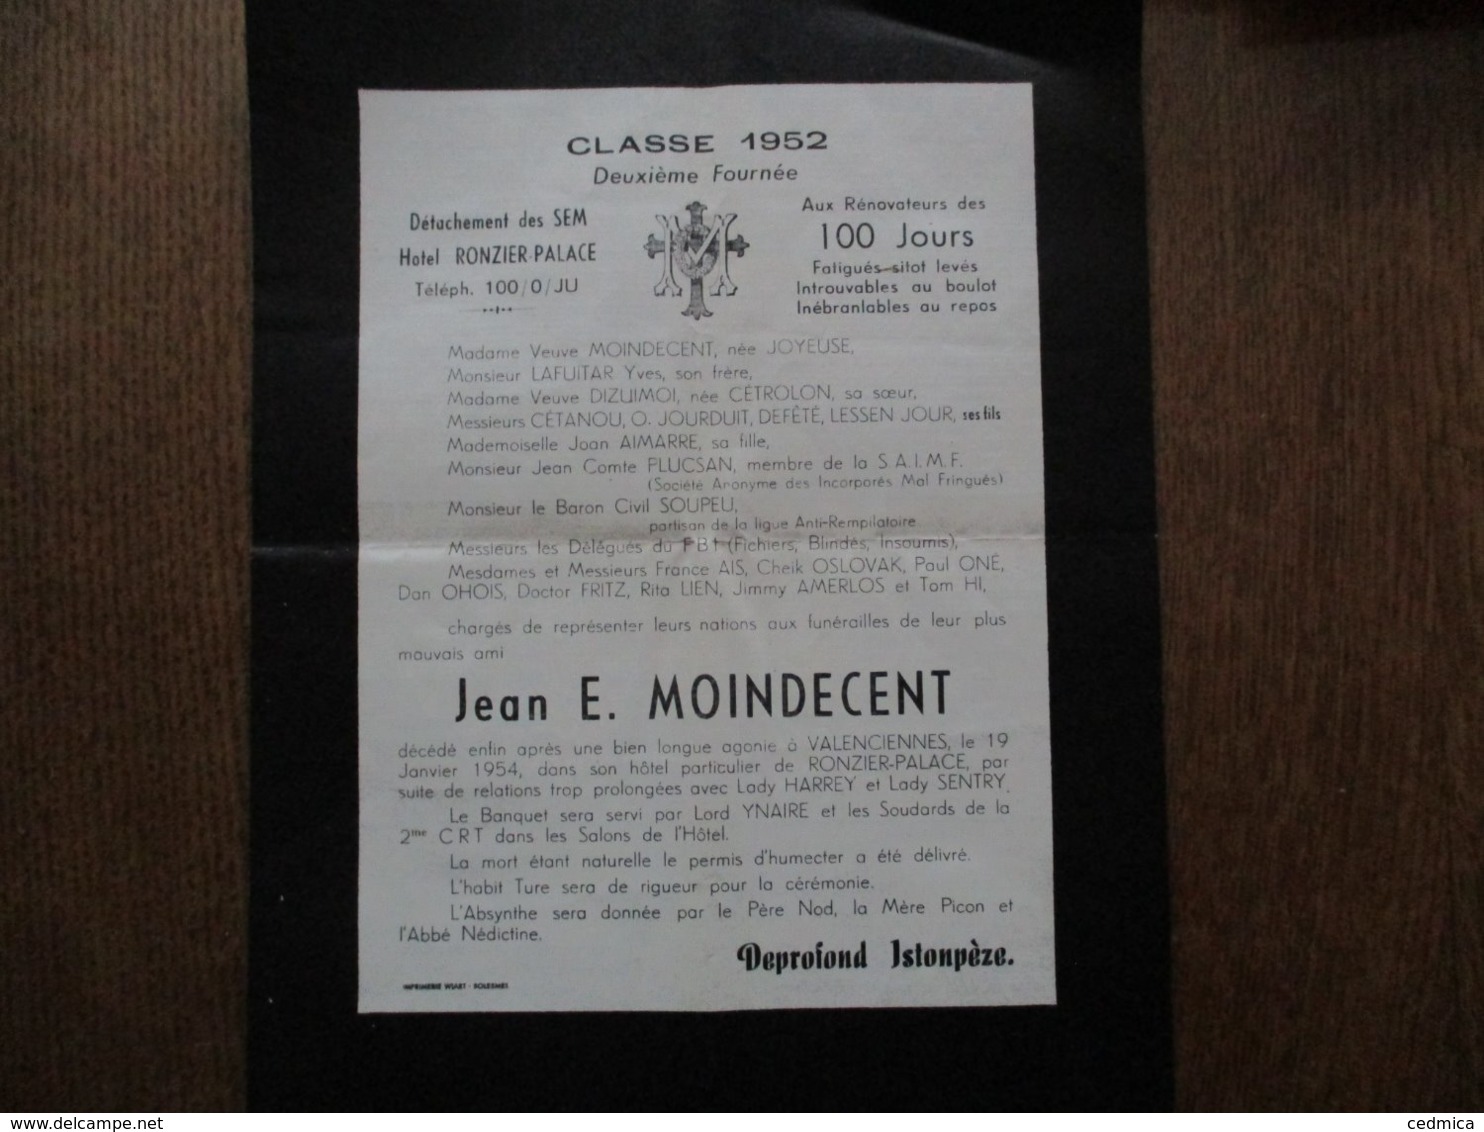 JEAN E. MOINDECENT CLASSE 1952 DEUXIEME FOURNEE DETACHEMENT DES SEM HOTEL RONZIER-PALACE - Dokumente